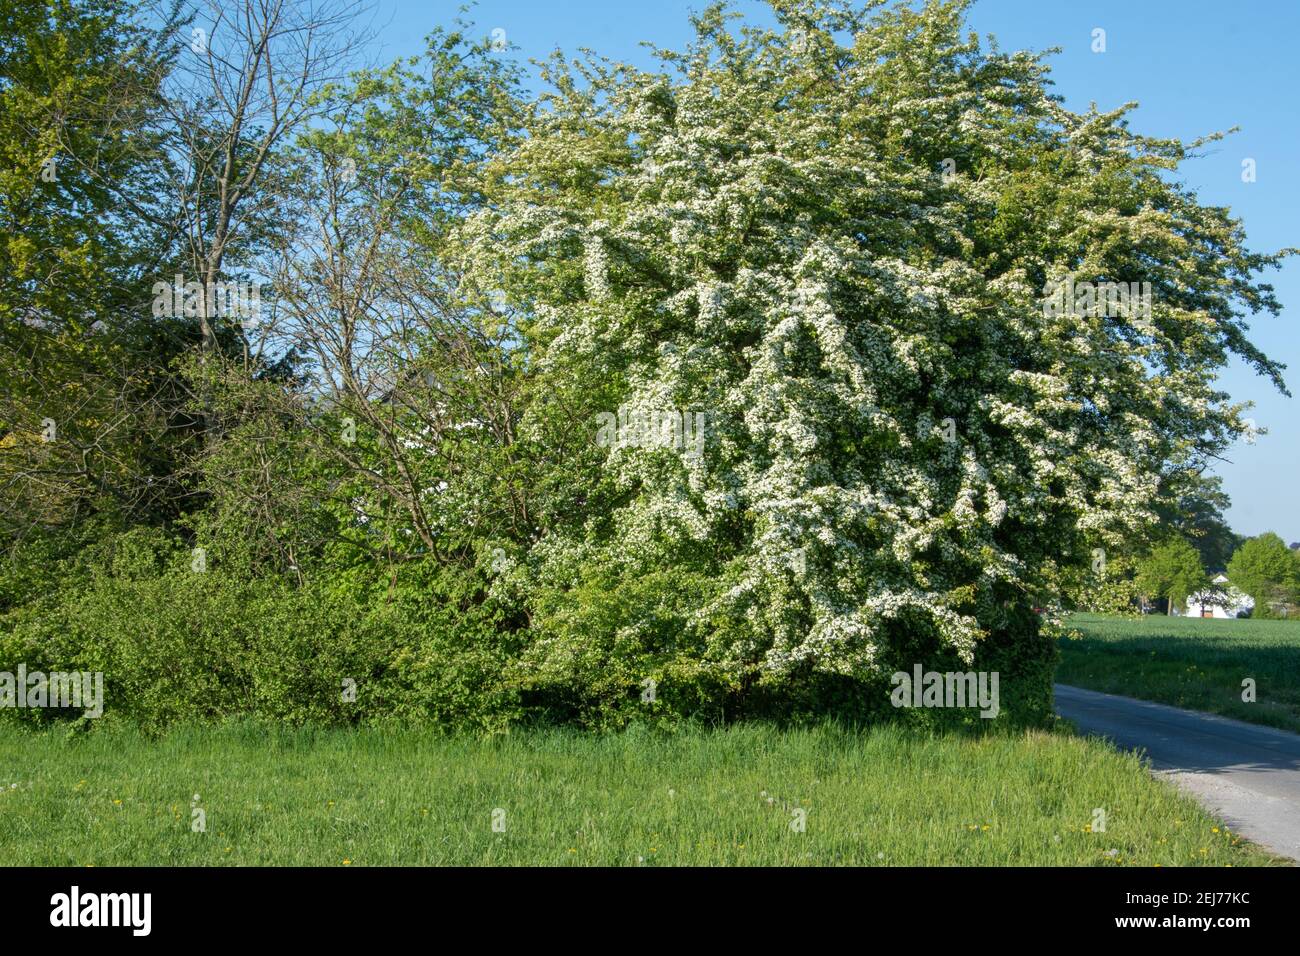 Eine Hecke blühenden Weißdorns, Crataegus monogyna, im Frühling.  Weißdornhecken sind pflegeleicht, dicht, robust und von hohem ökologischen  Wert Stockfotografie - Alamy